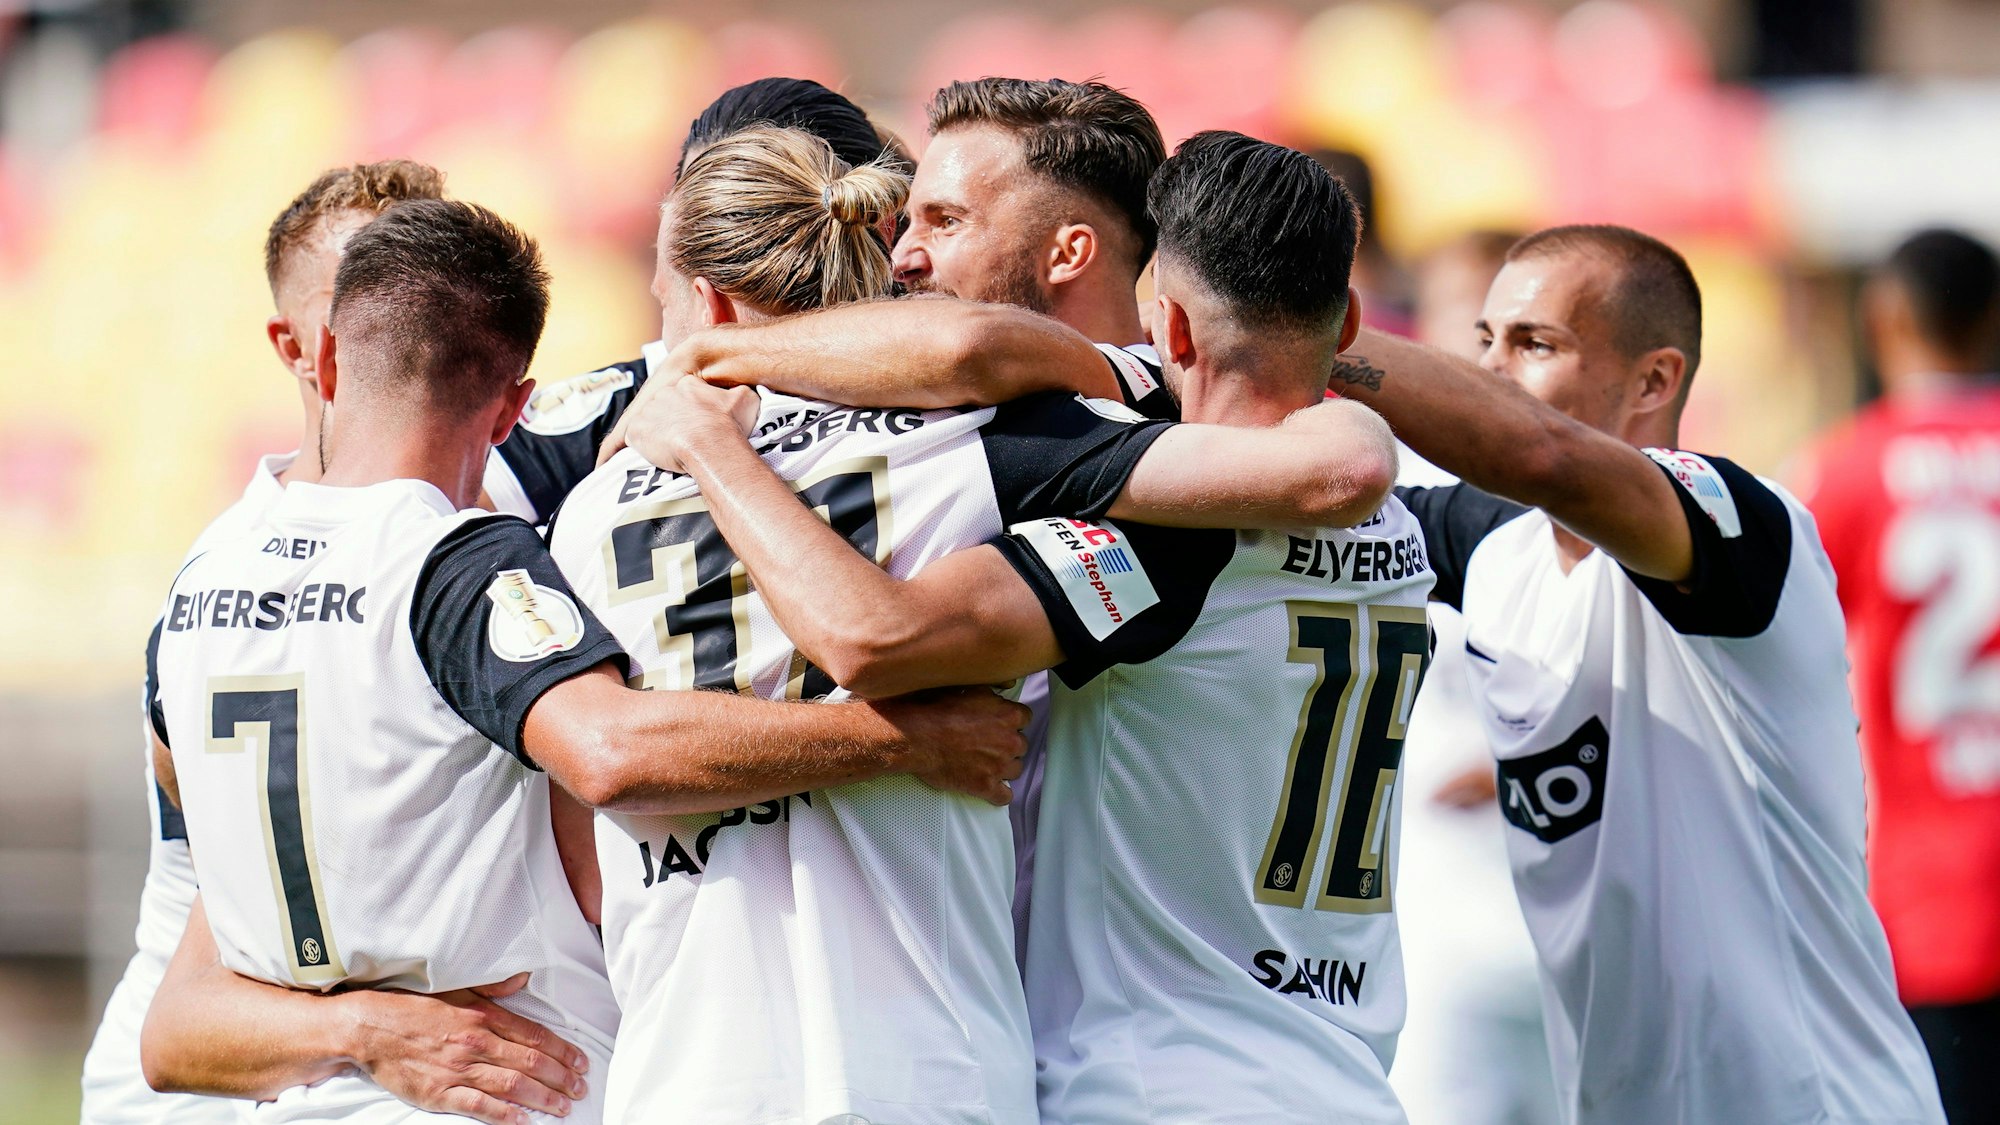 Die Spieler der SV Elversberg bejubeln ein Tor im Pokal-Spiel gegen Bayer Leverkusen